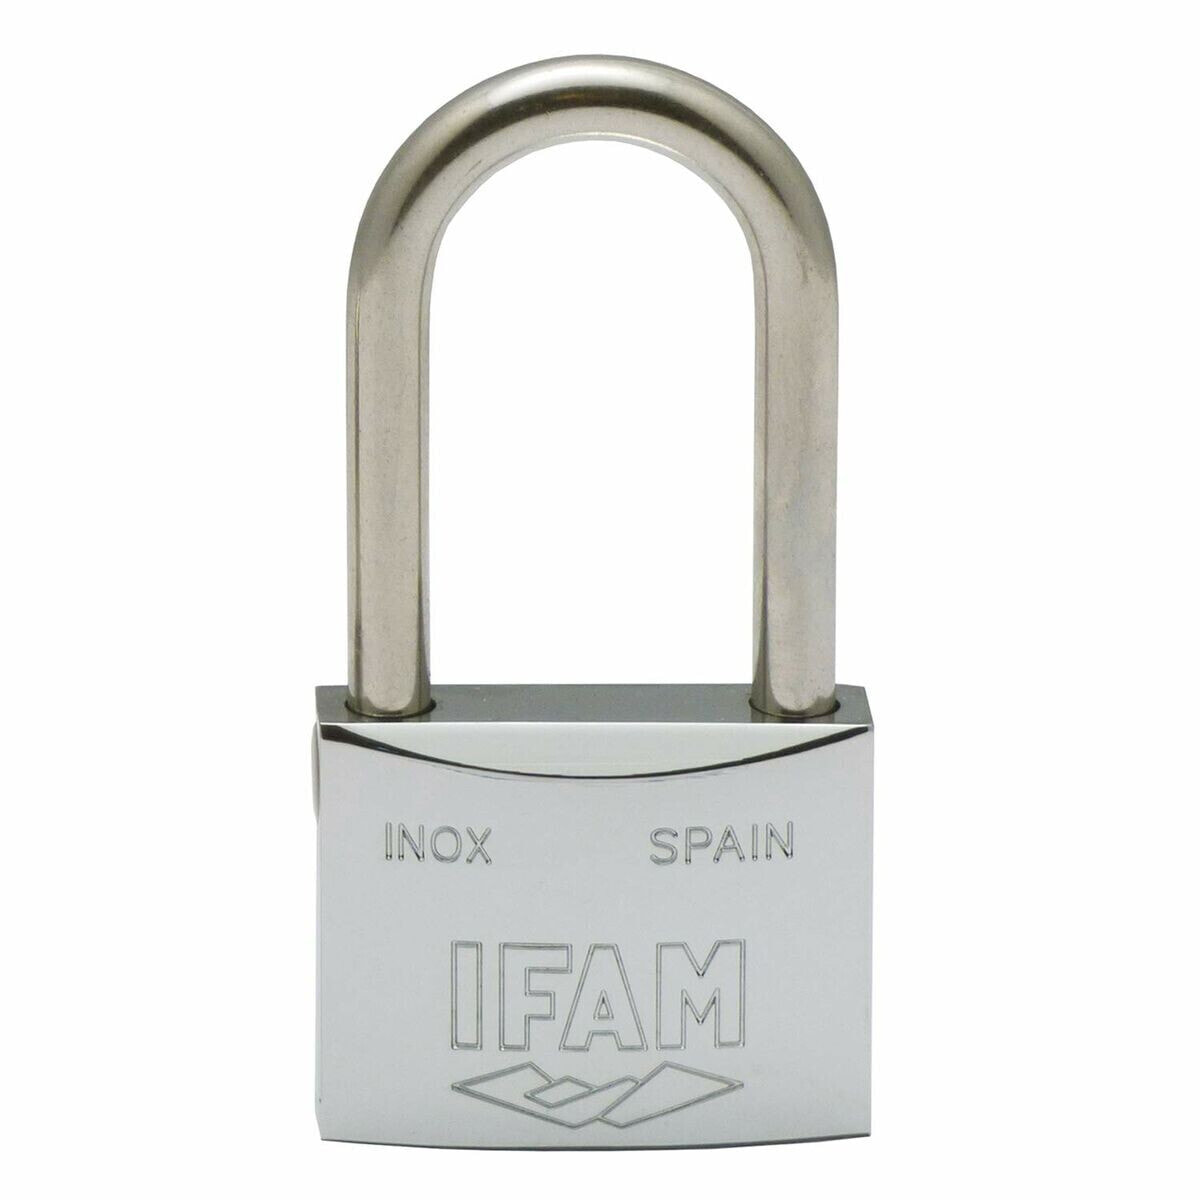 Key padlock IFAM INOX 50AL Stainless steel Length (5 cm)